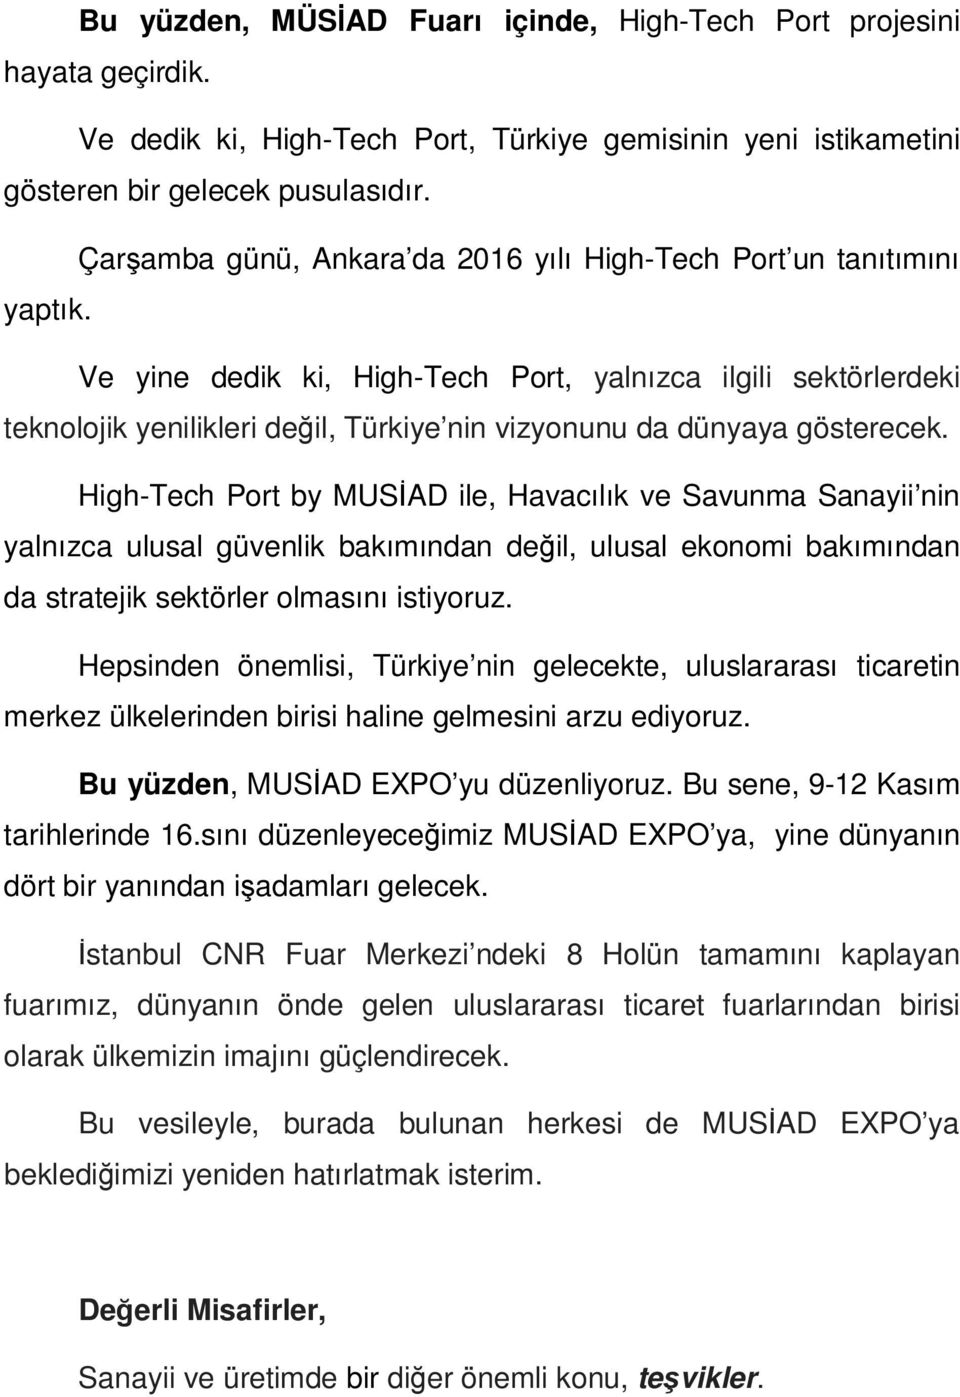 Ve yine dedik ki, High-Tech Port, yalnızca ilgili sektörlerdeki teknolojik yenilikleri değil, Türkiye nin vizyonunu da dünyaya gösterecek.